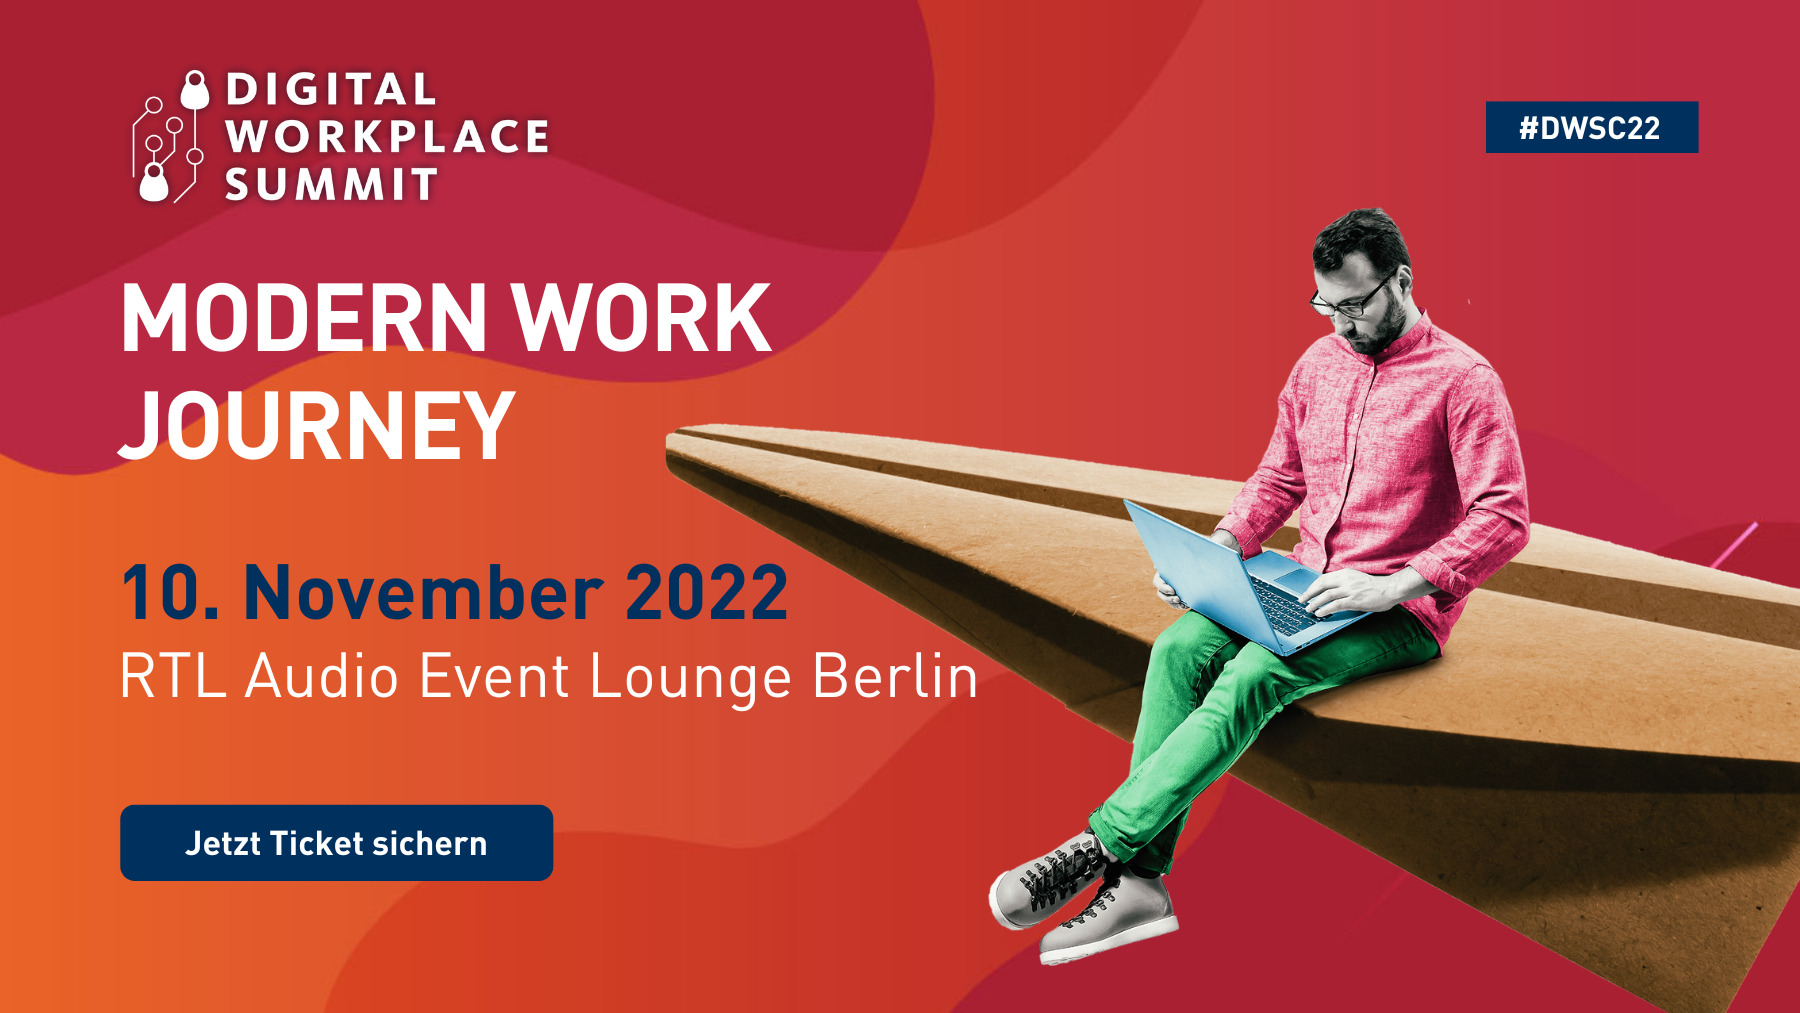 Modern Work Journey beim Digital Workplace Summit 22 am 10.11.2022. Seien Sie in Berlin mit dabei!